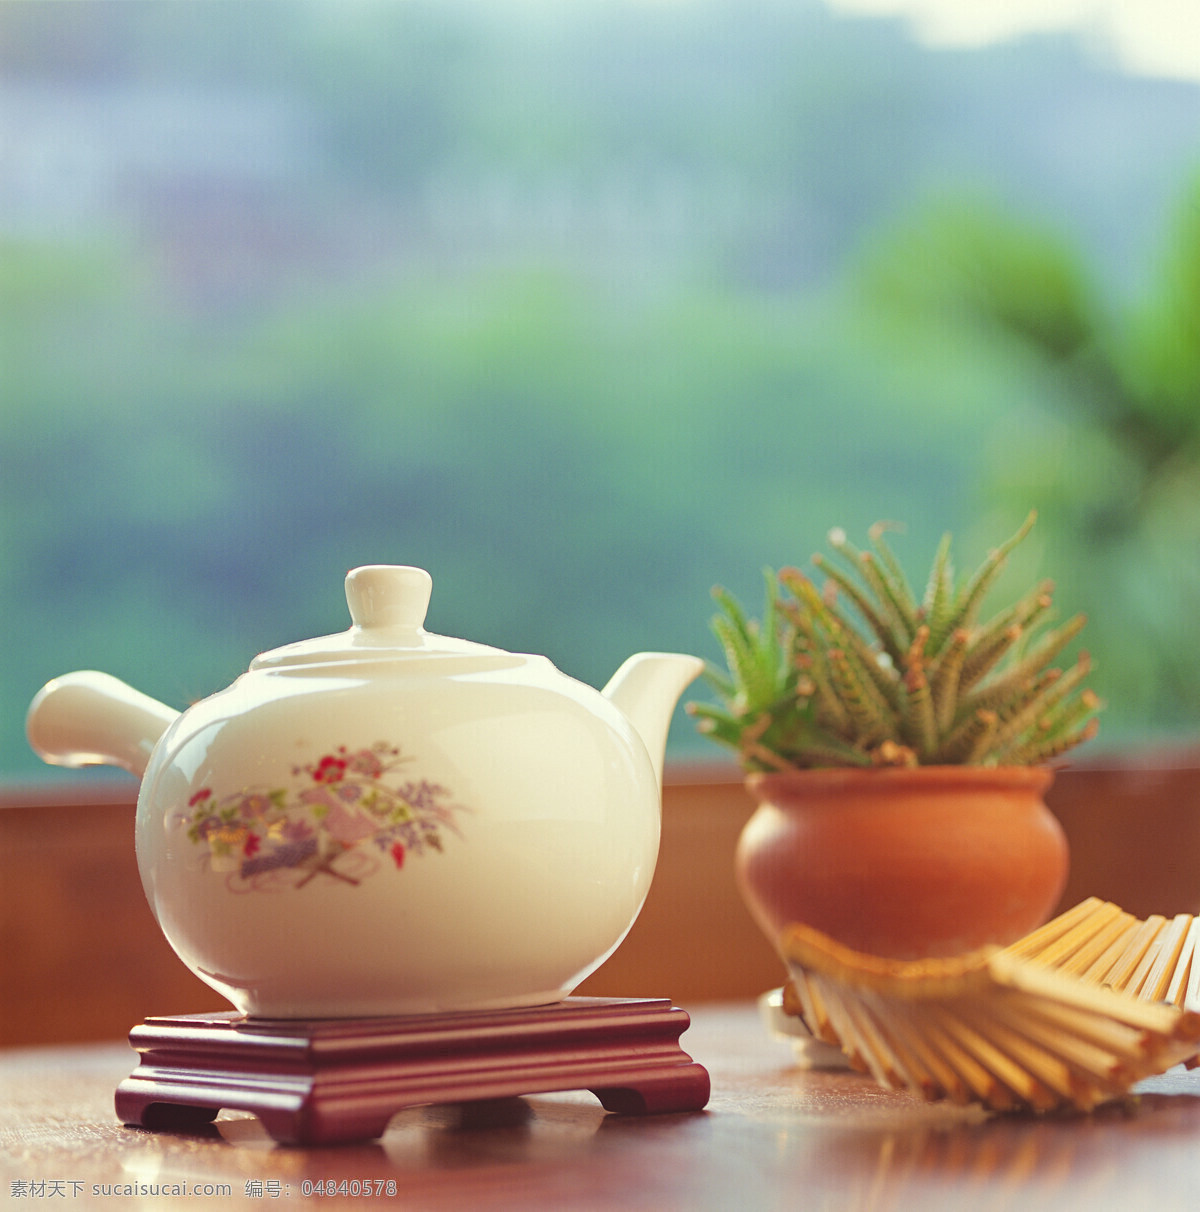 品茶文化 茶 茶文化 茶壶 圖片素材 青色 天蓝色